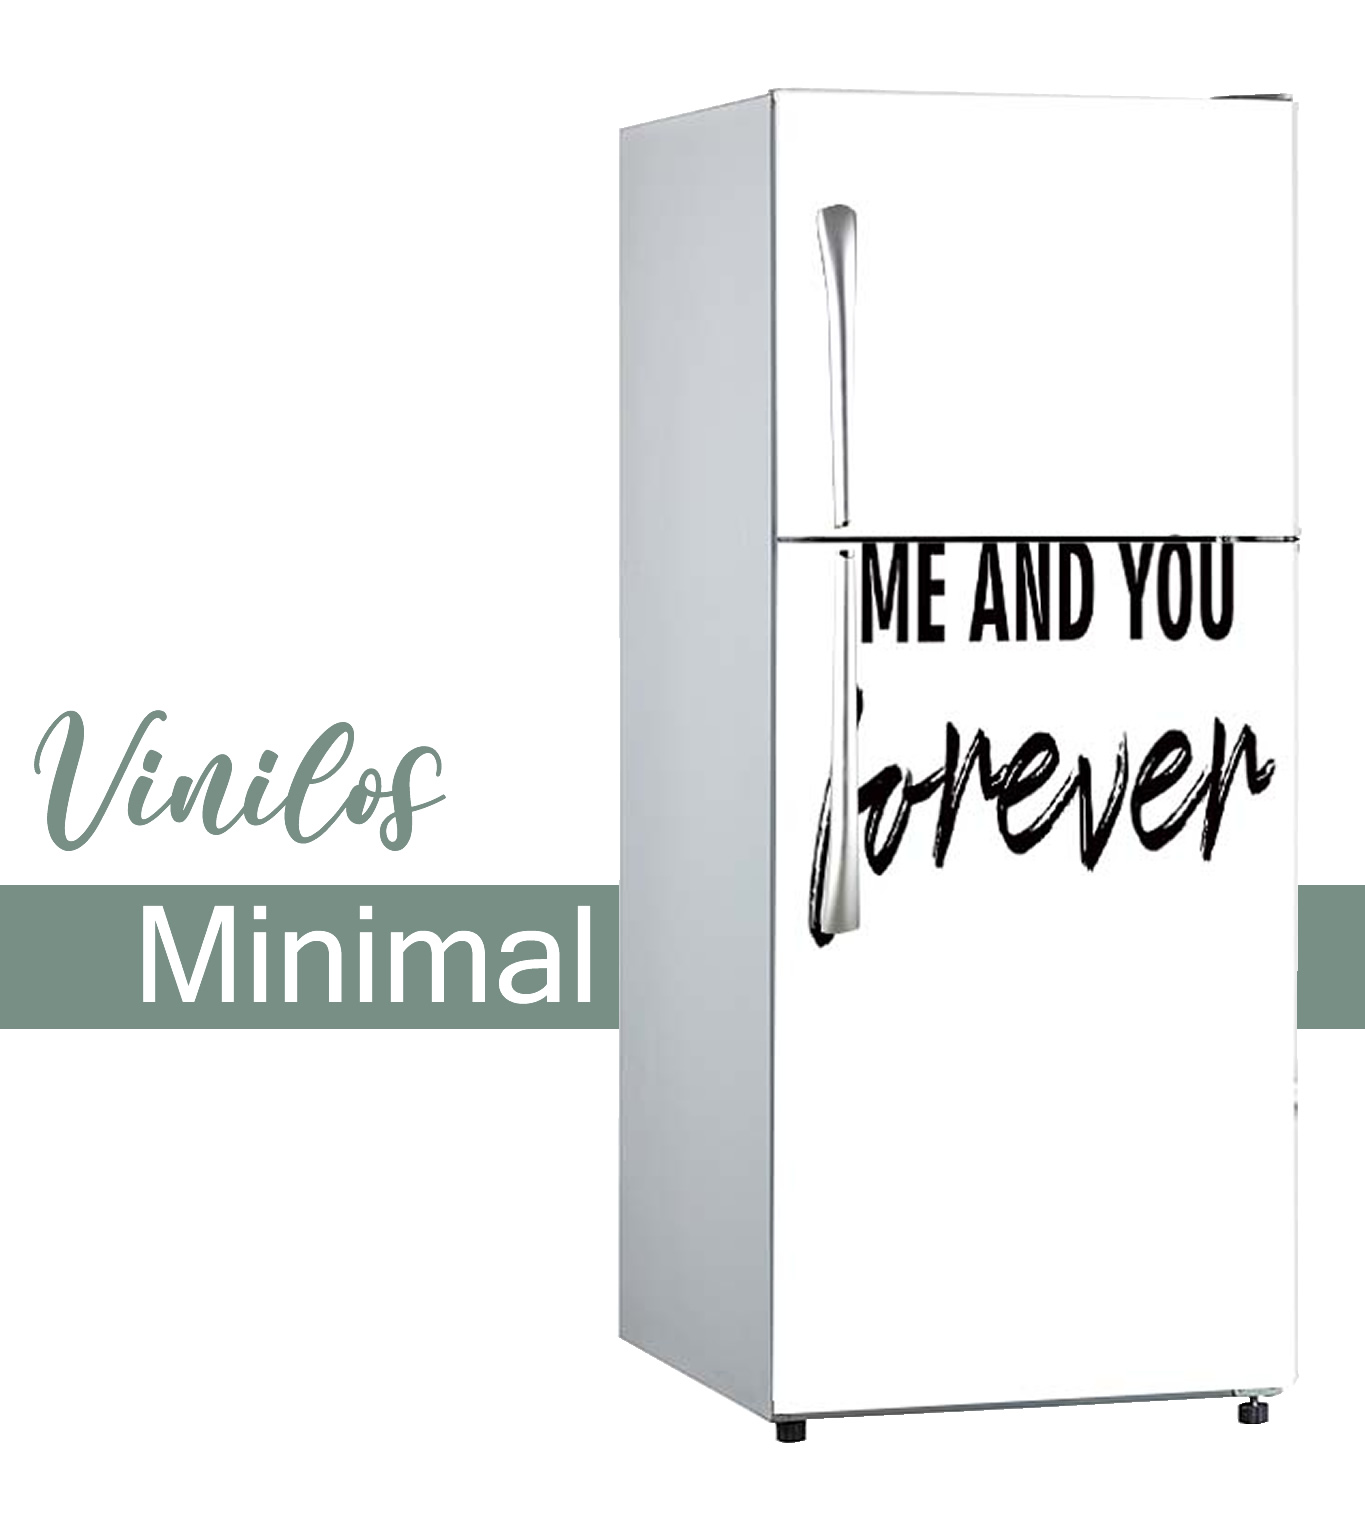 Categoría Minimal Movil de vinilos decorativos para frigoríficos